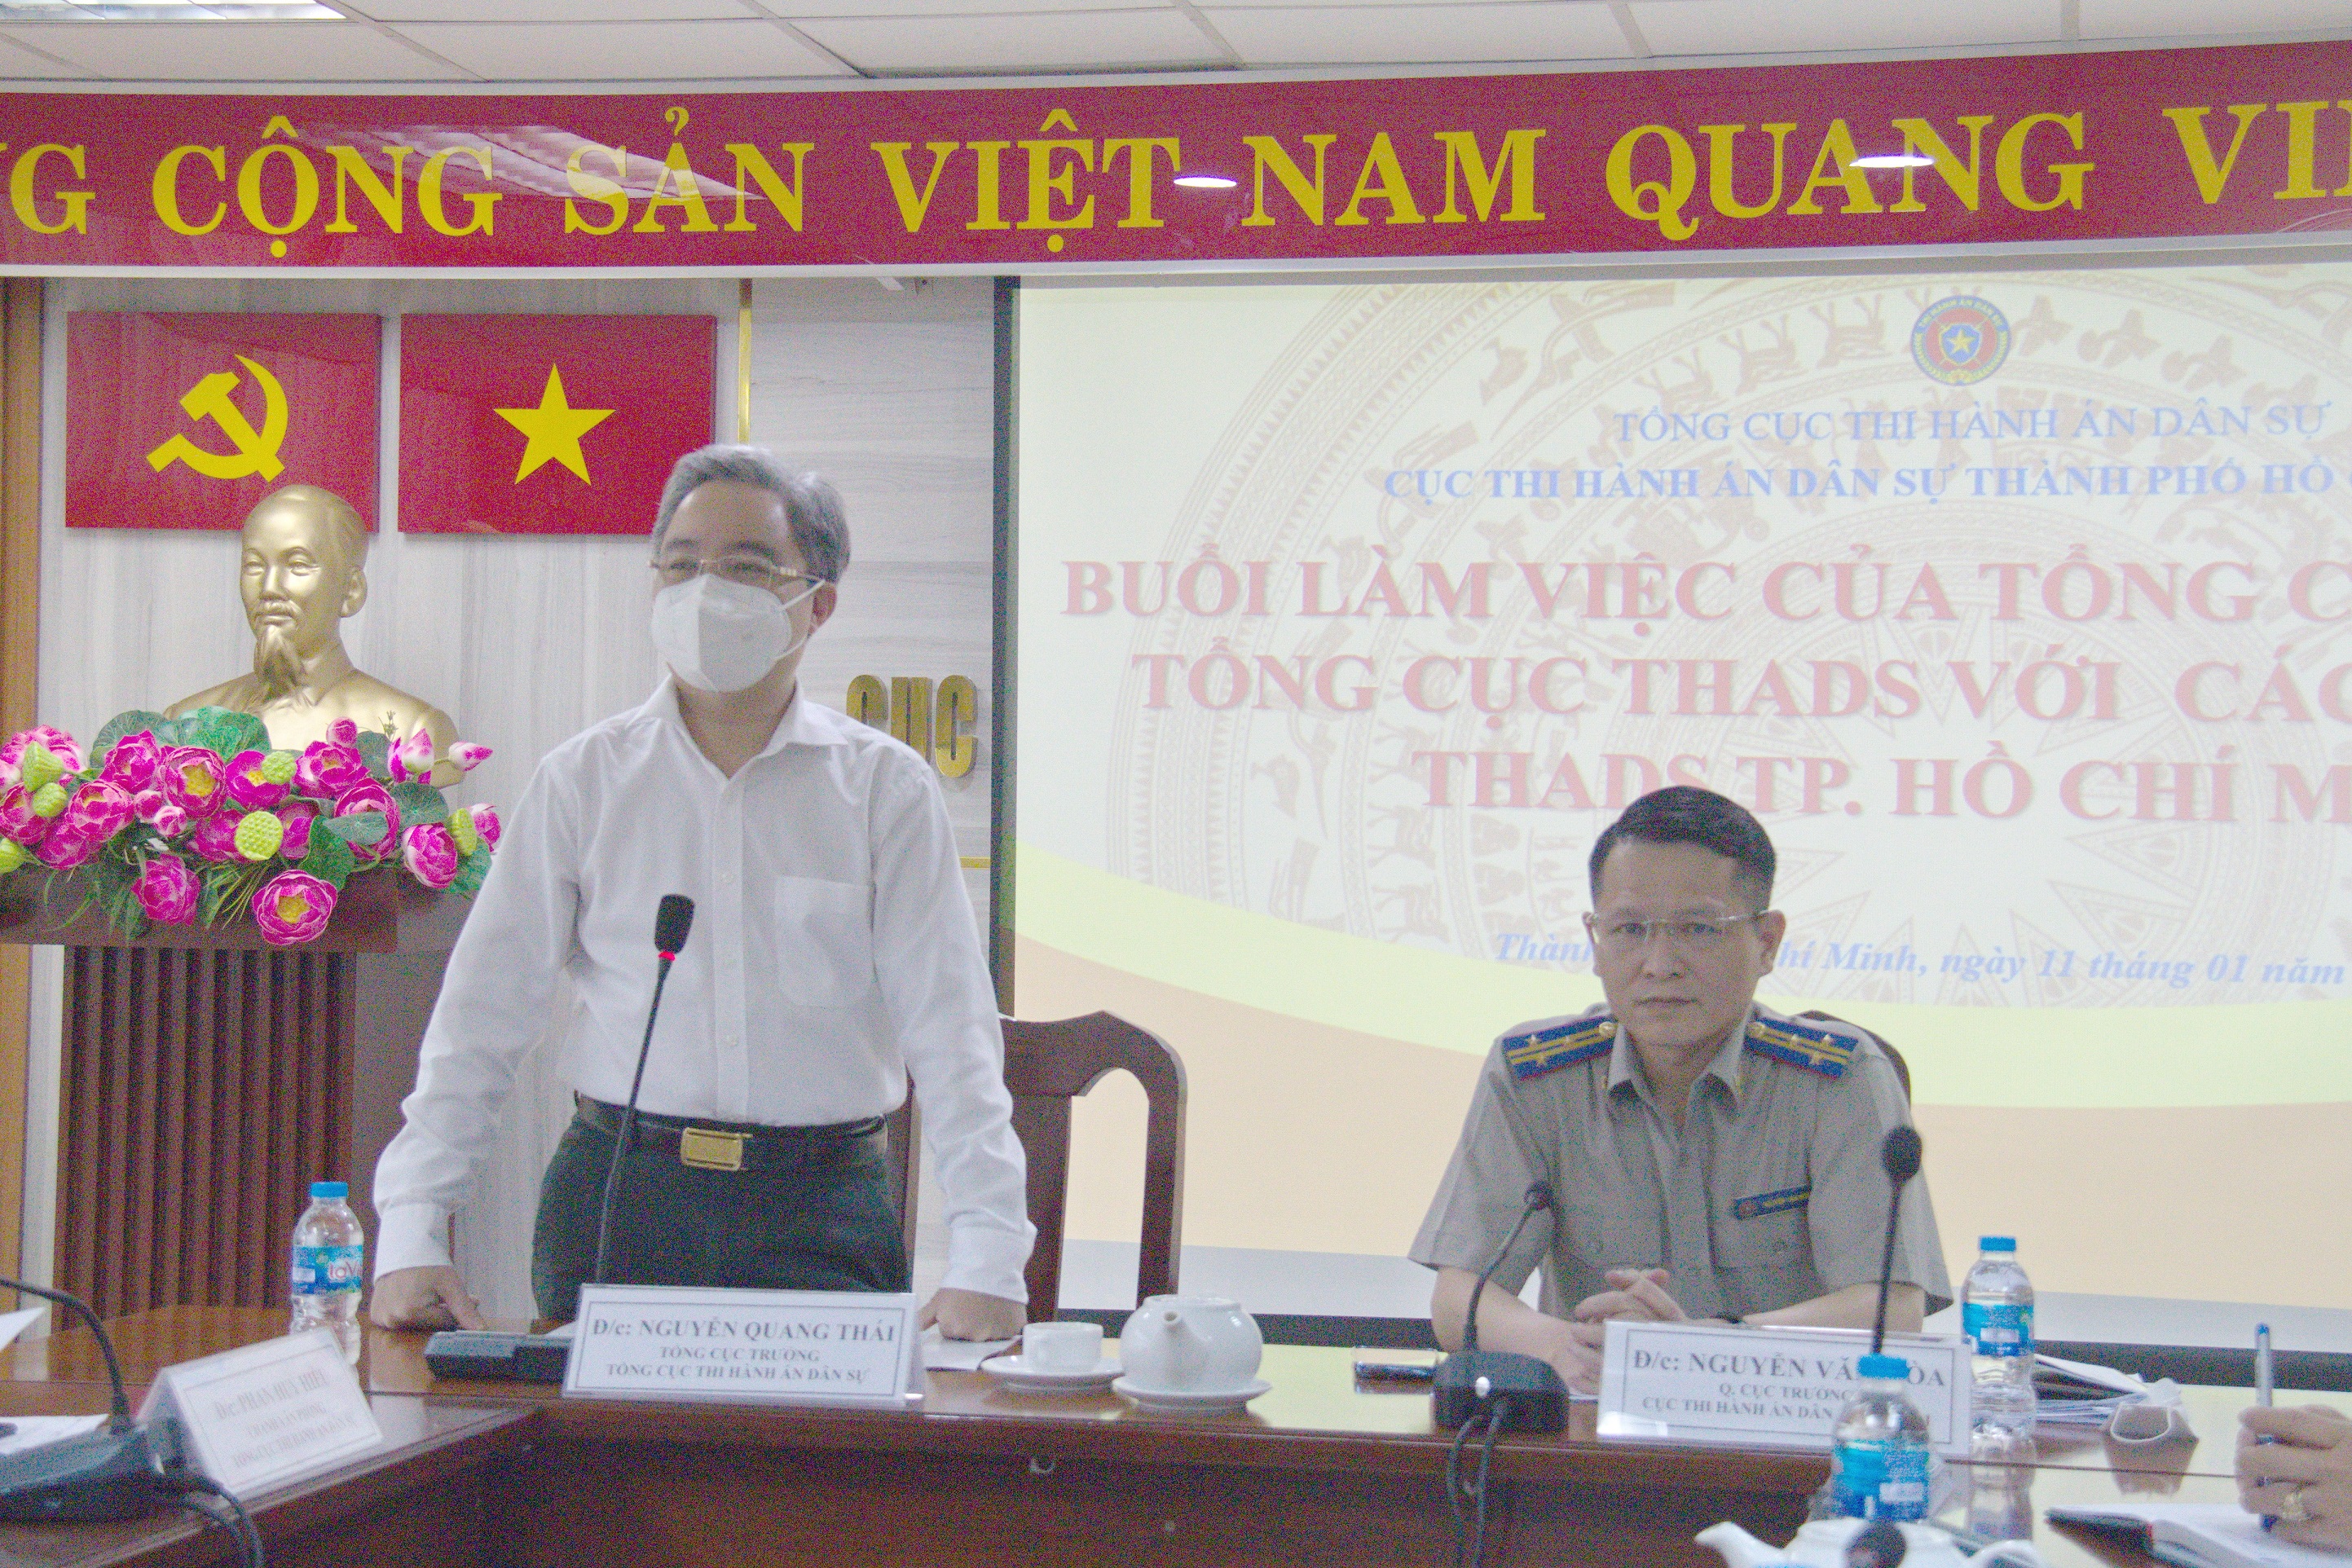 Tổng cục trưởng Nguyễn Quang Thái làm việc với các cơ quan  THADS thành phố Hồ Chí Minh